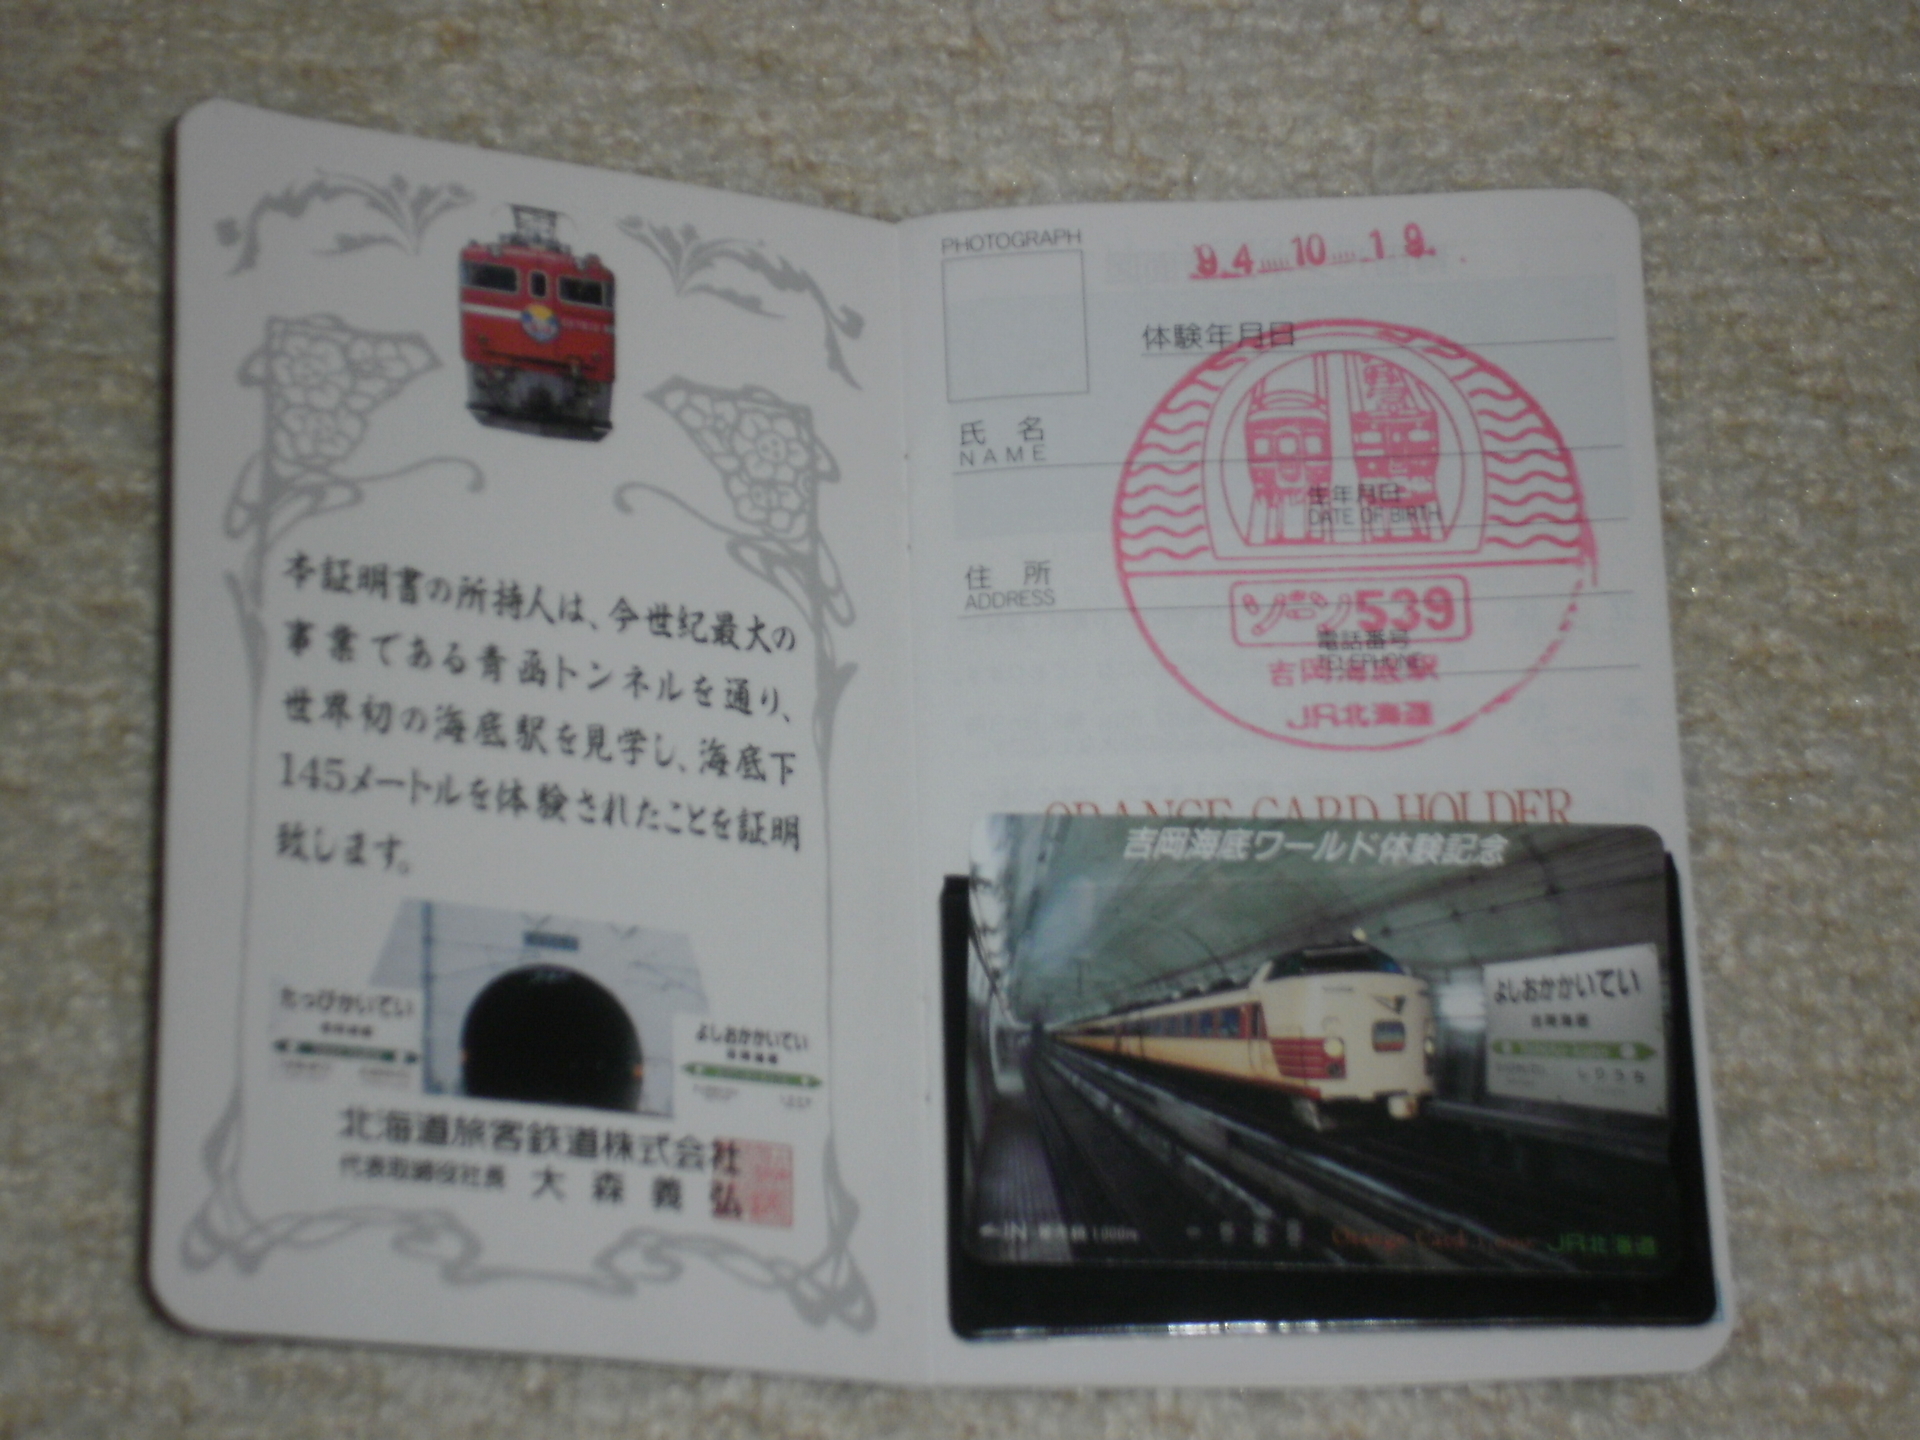 マイコレクション７９２ 青函トンネル体験証明書パスポート(未使用オレンジカード付)〕: 北の鉄ちゃんの部屋